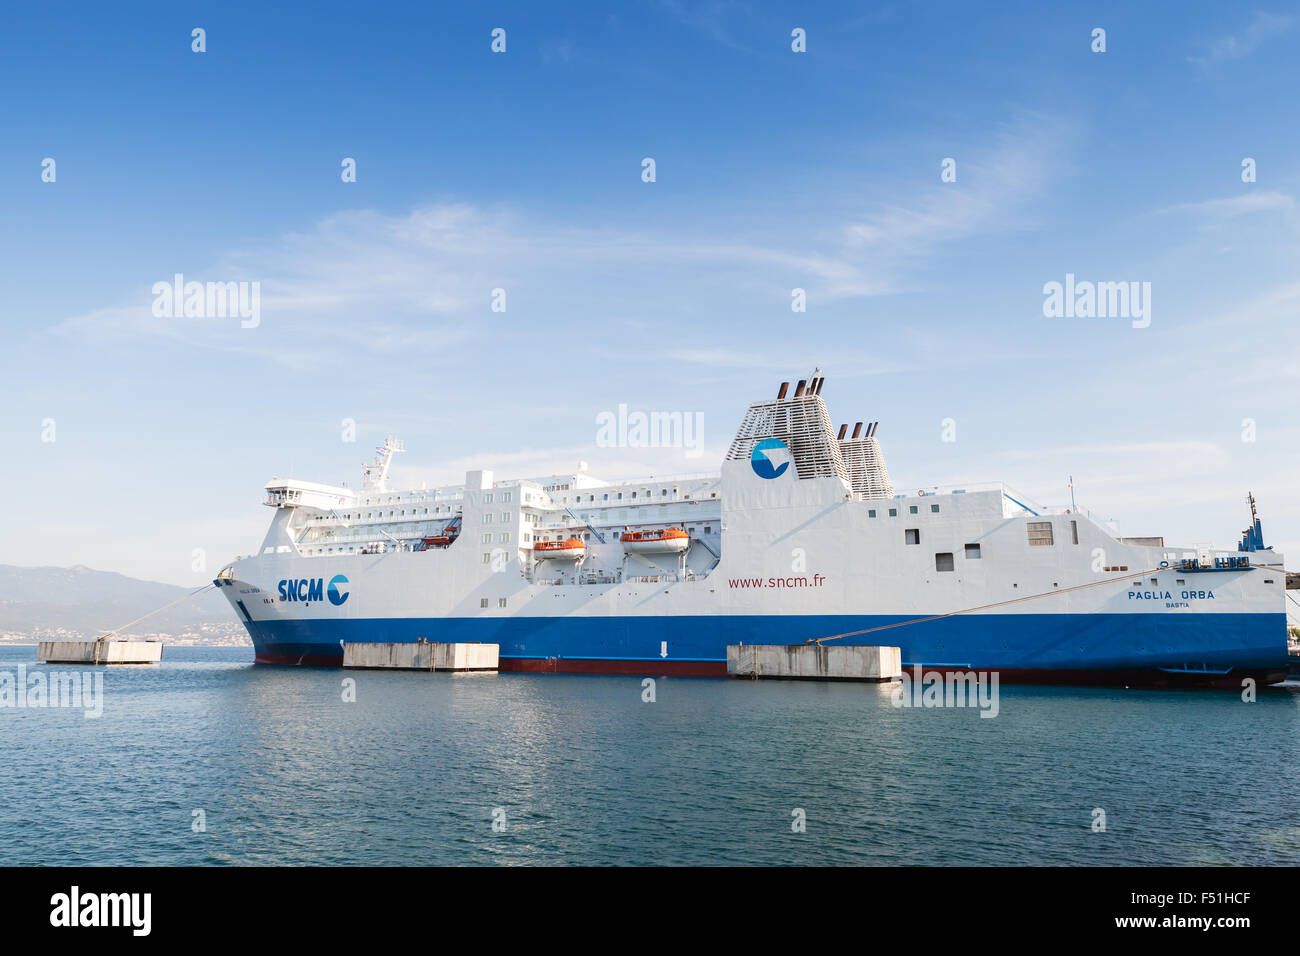 Ajaccio, France - 29 juin 2015 : navire à passagers Paglia Orba par la SNCM compagnie maritime française opérant en Méditerranée Banque D'Images